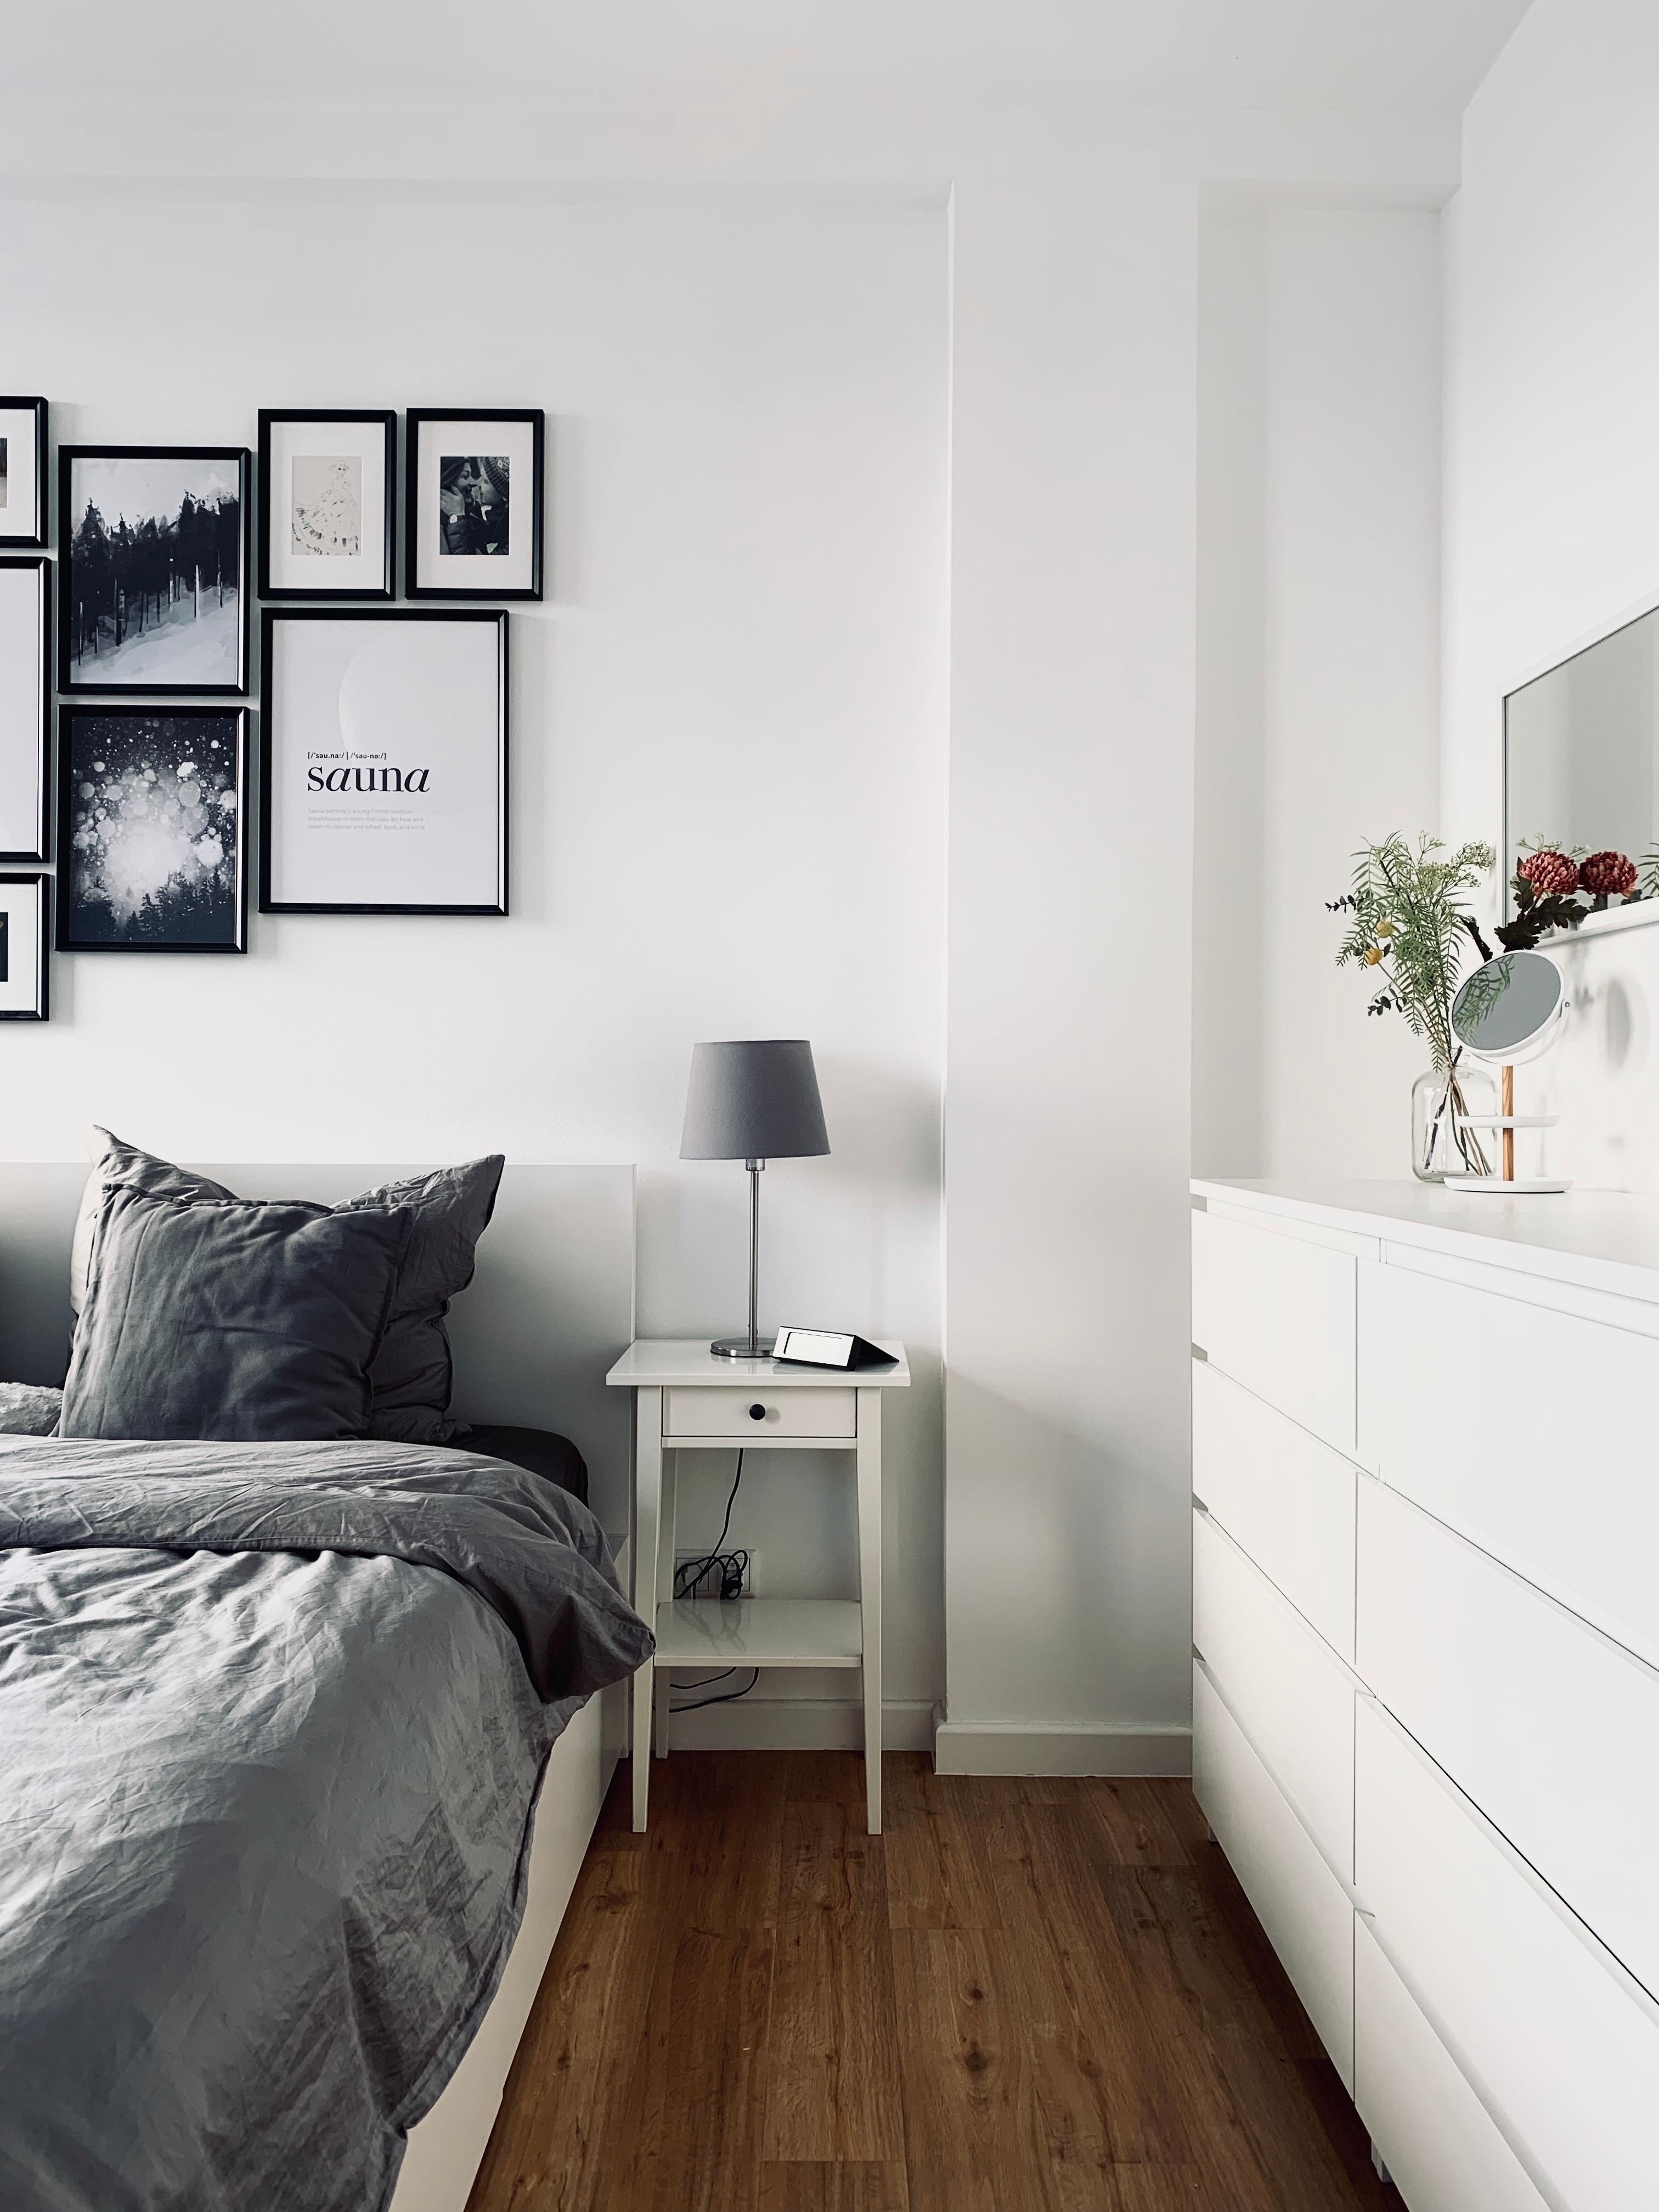 Die hohen Wände sollten unbedingt weiß bleiben. Auch im Schlafzimmer. 

#whiteliving #solebich #geliebteszuhause 